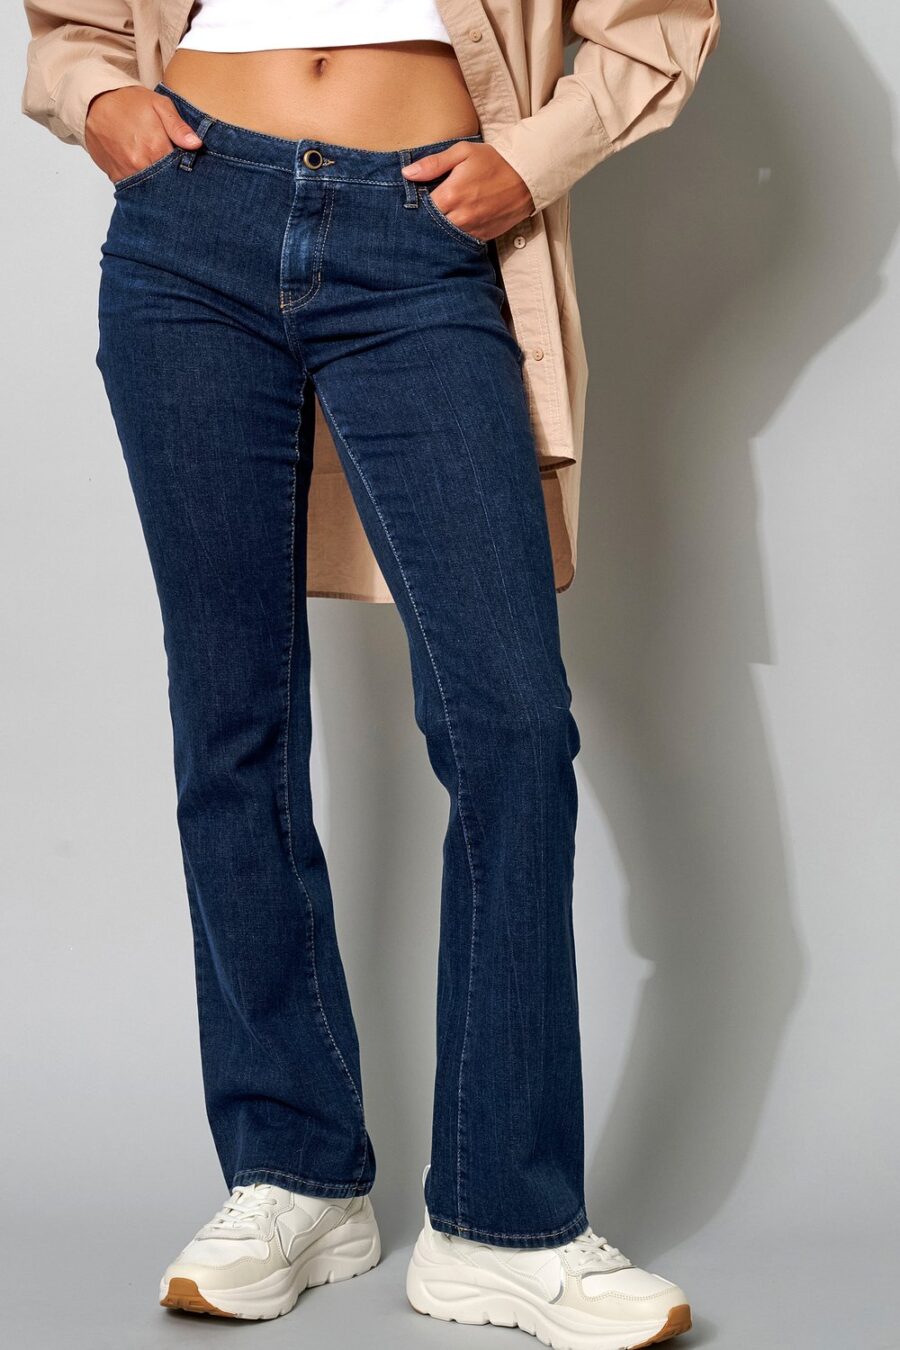 Rosner jeans Bootcut zutphen